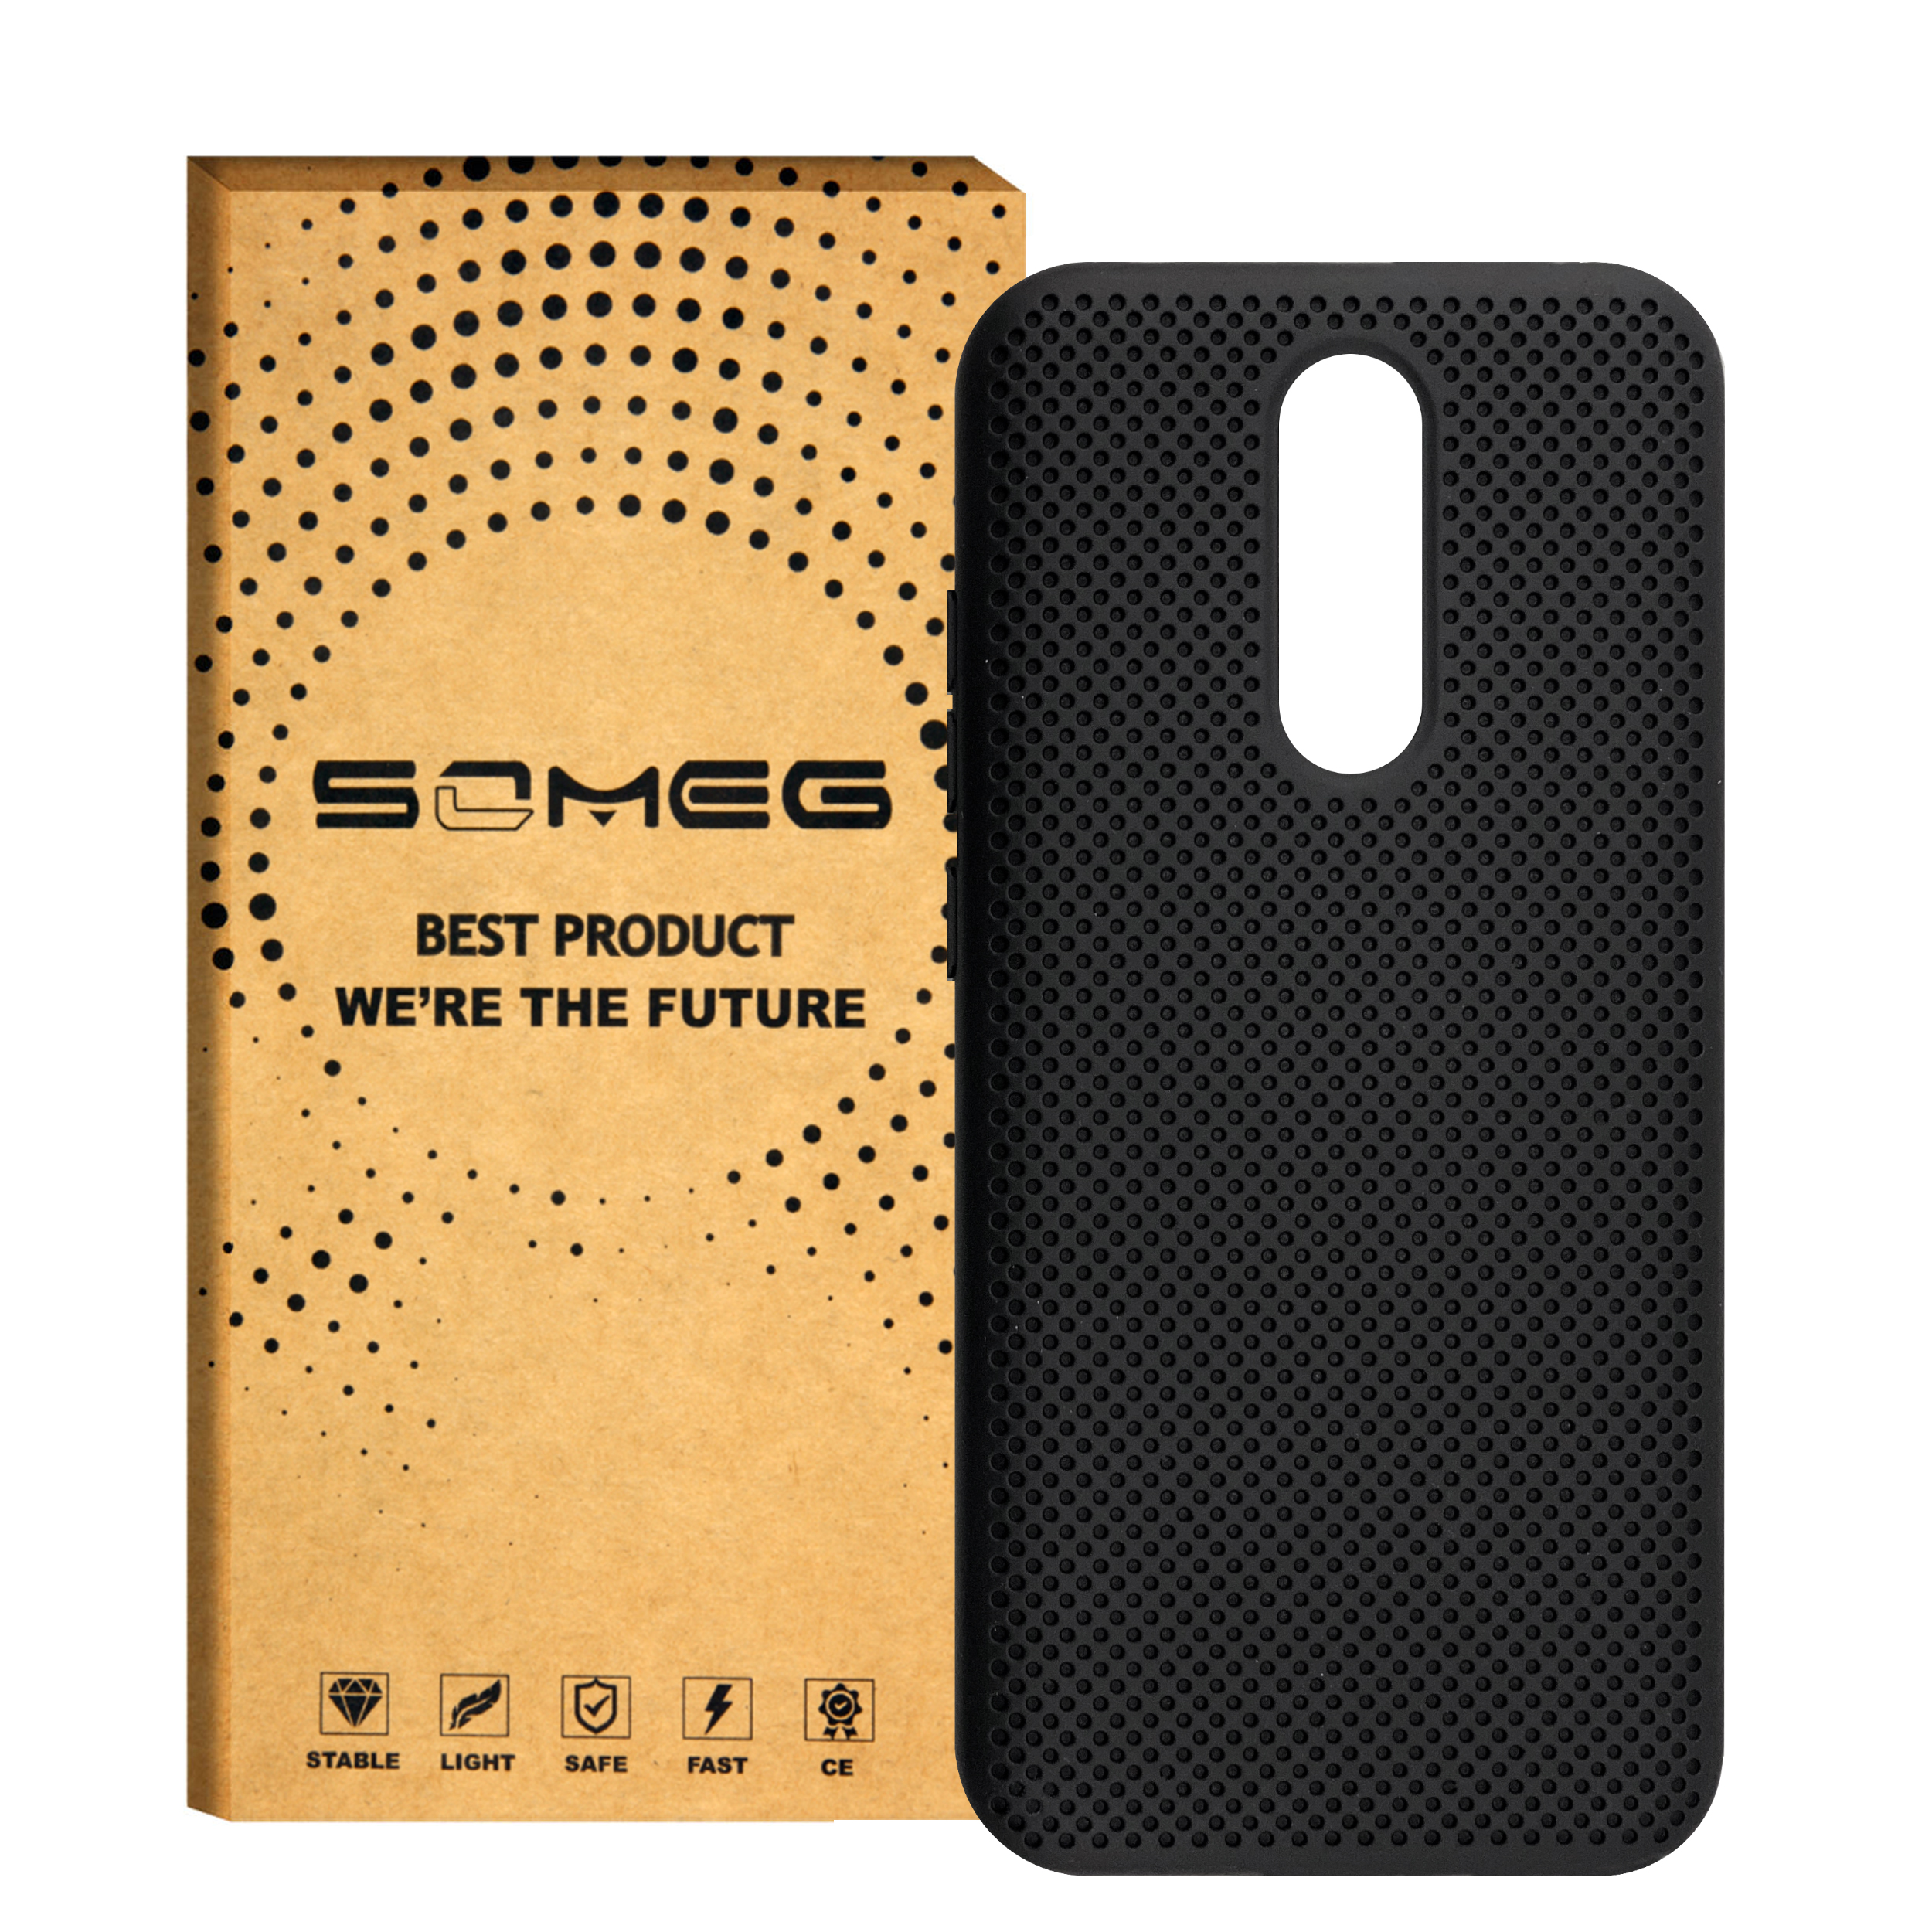 کاور سومگ مدل SMG-Needle مناسب برای گوشی موبایل شیائومی Redmi 8